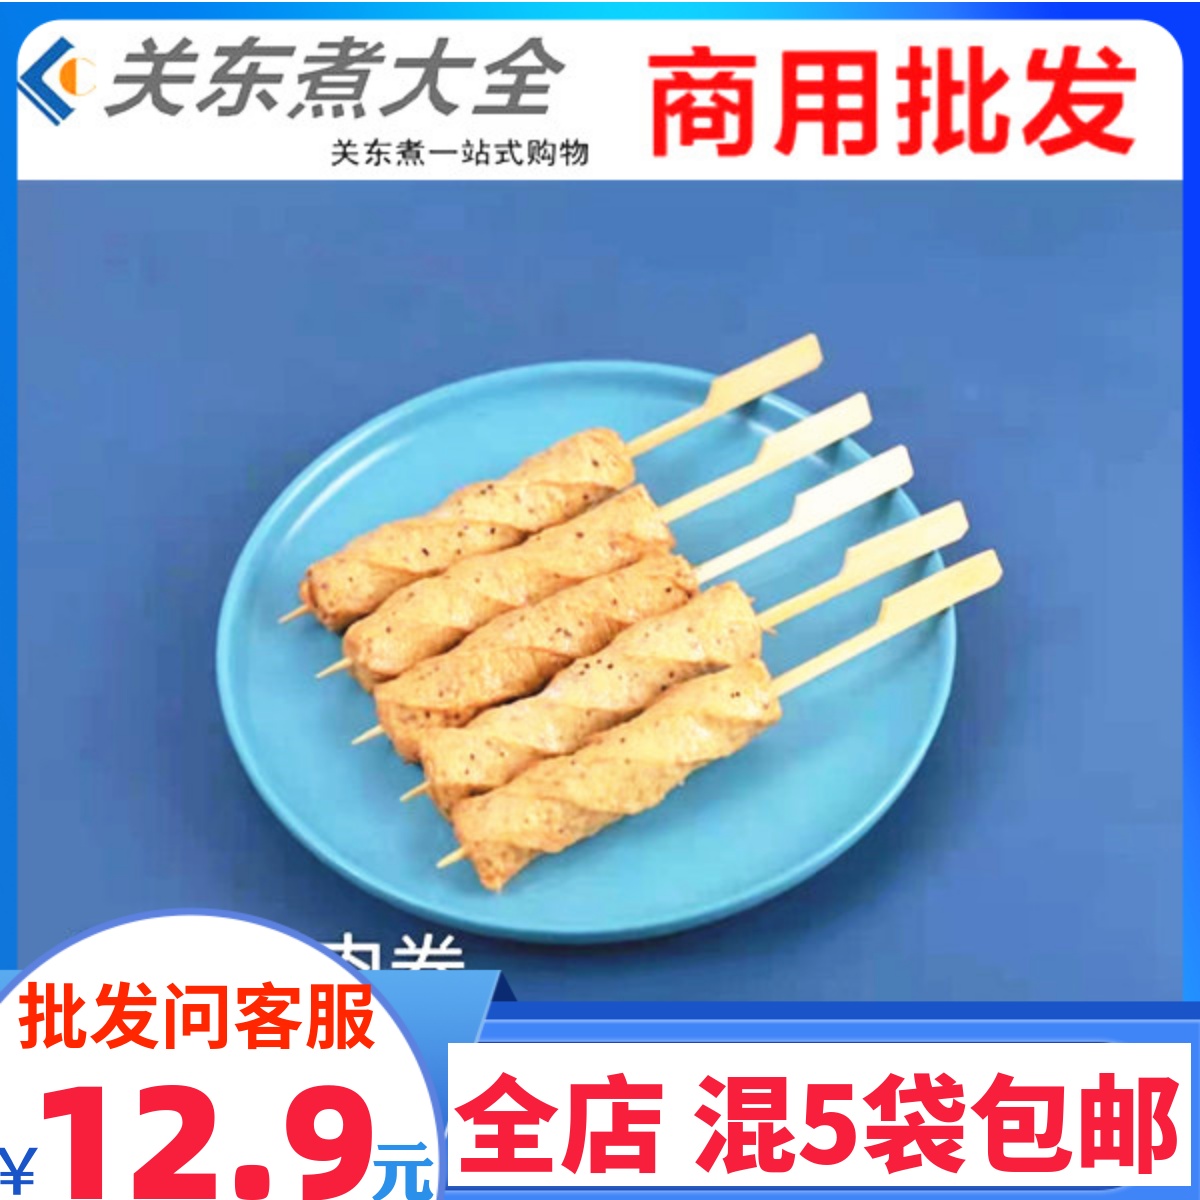 黑椒鸡肉棒10串 鲜之逸立圆鼎味泰关东煮食材便利店7-11罗森同款